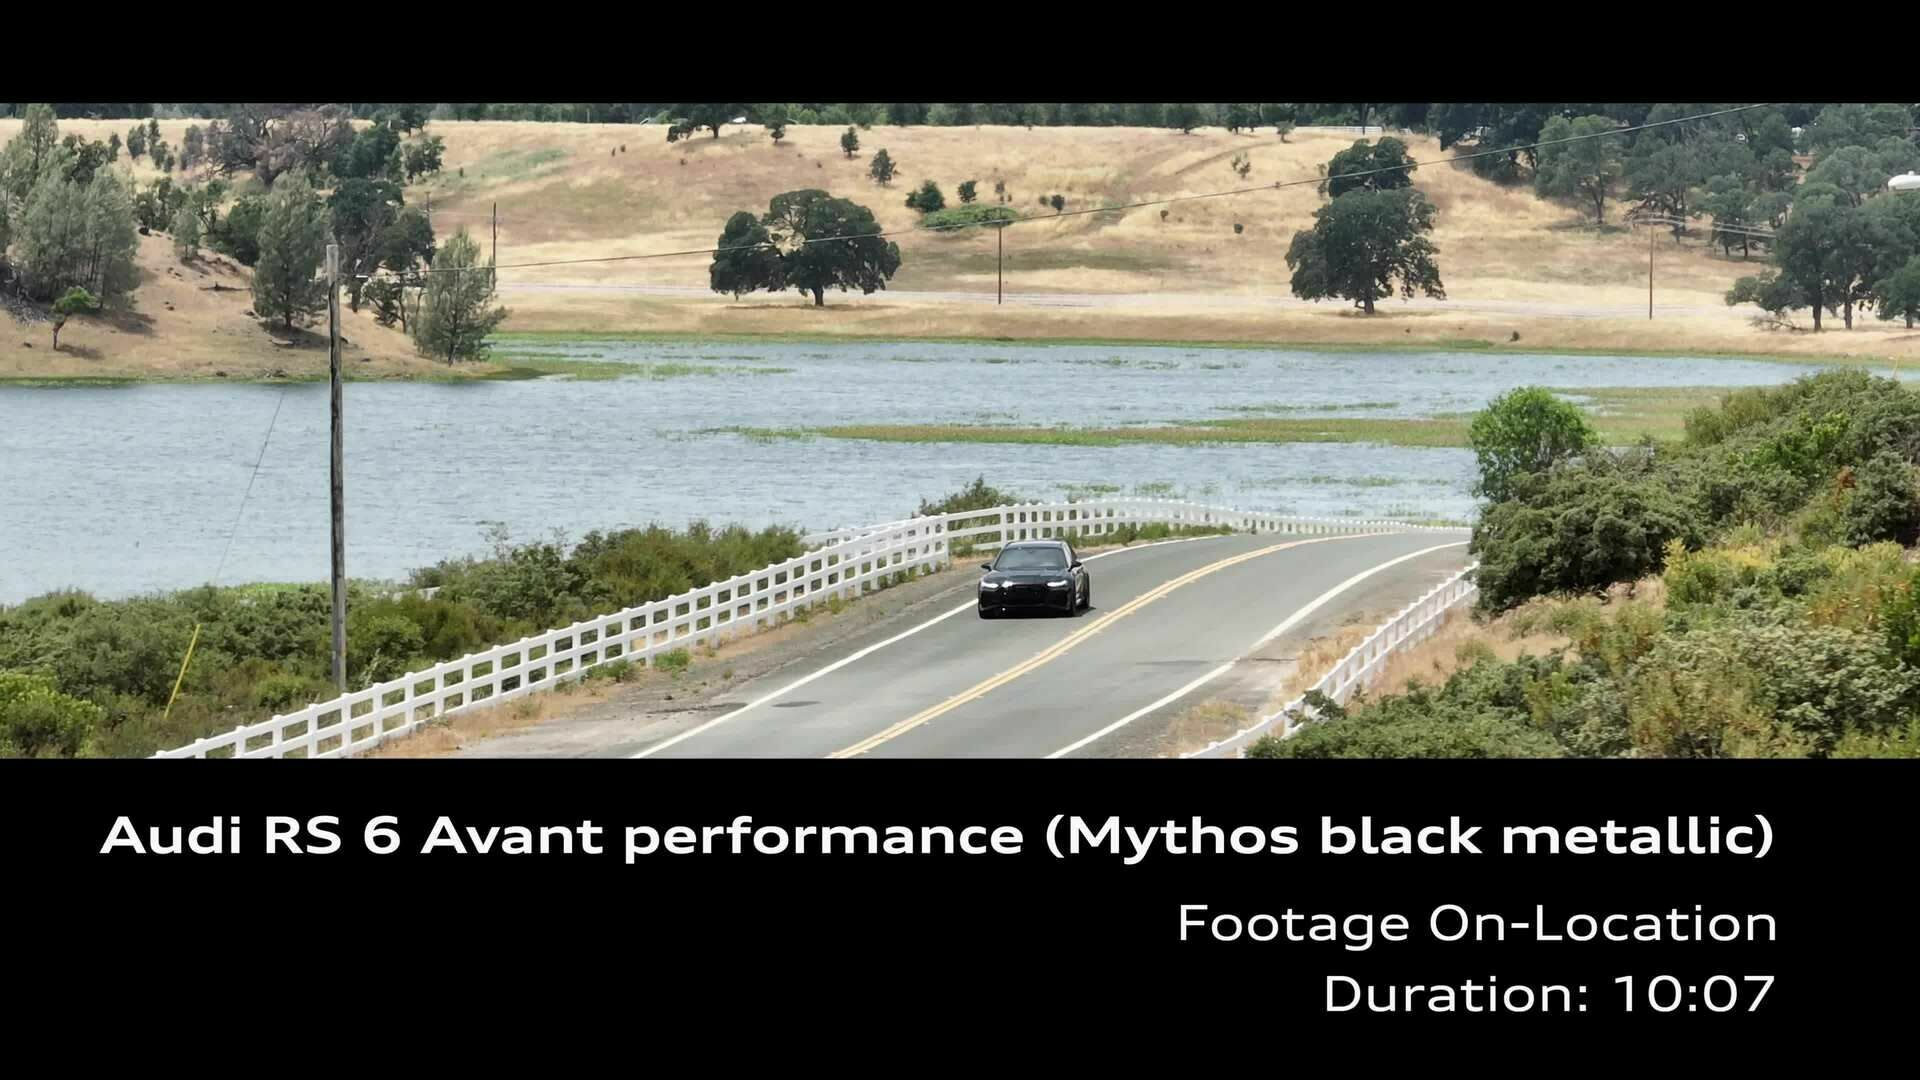 Footage: Audi RS 6 Avant performance Mythos black metallic